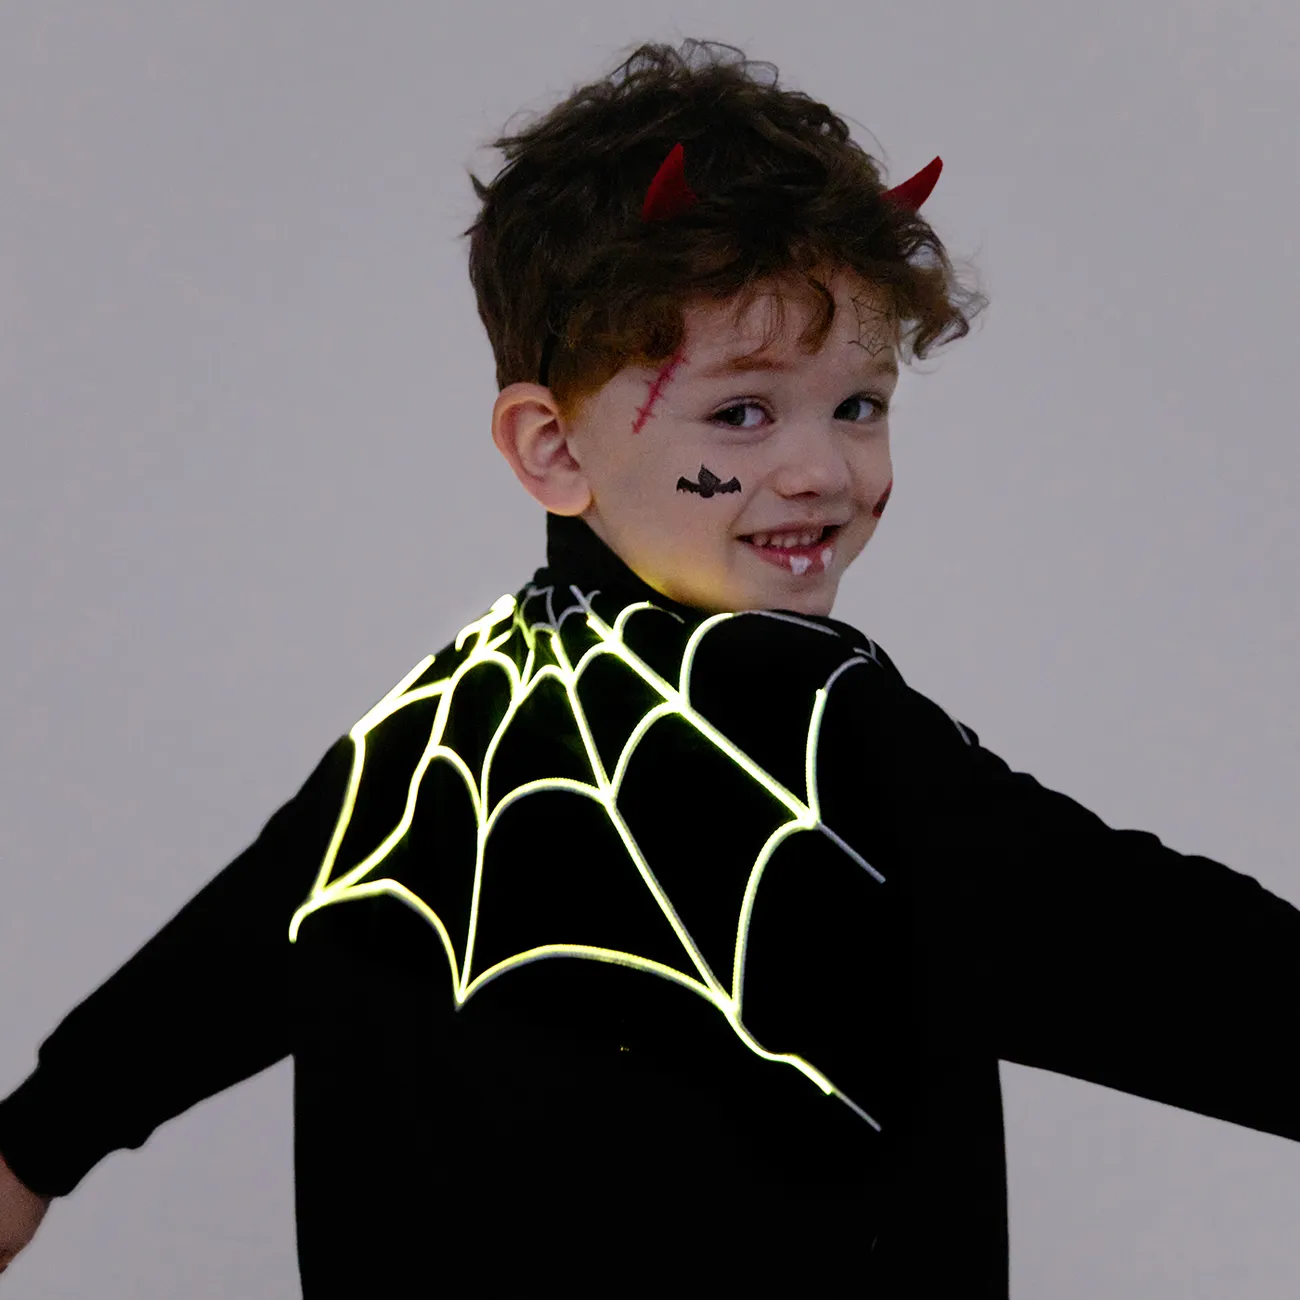 Go-Glow Leuchtjacke mit beleuchtetem, besticktem Spinnennetz inklusive Controller (eingebauter Akku) schwarz big image 1